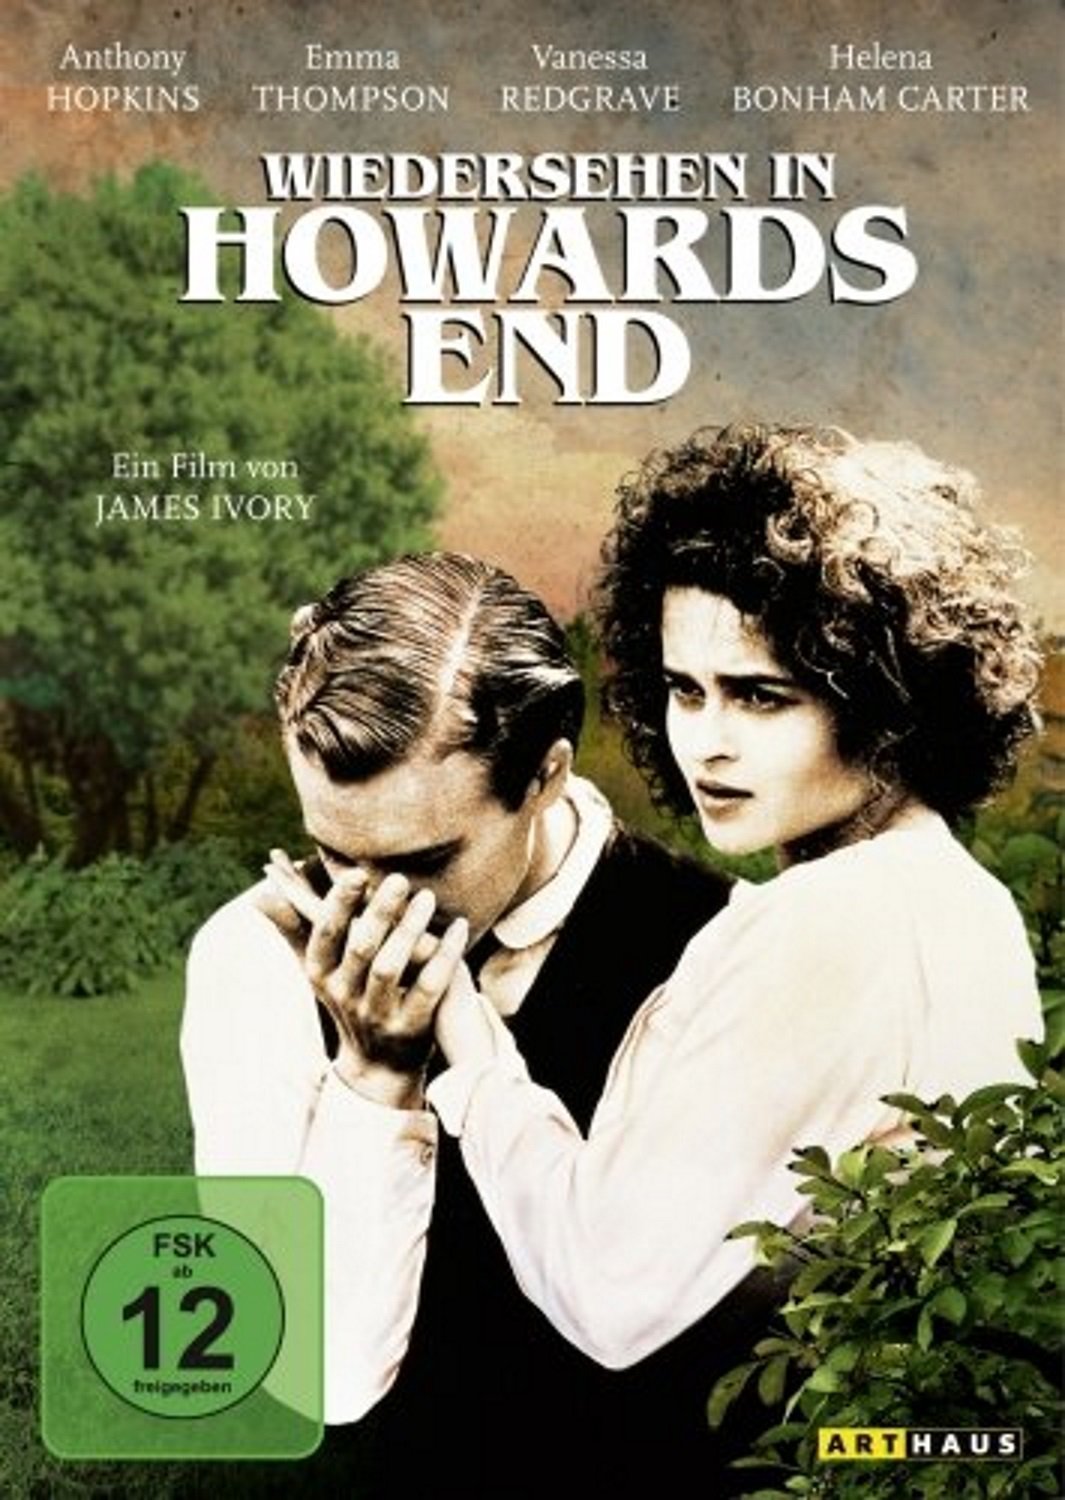 Plakat von "Wiedersehen in Howards End"